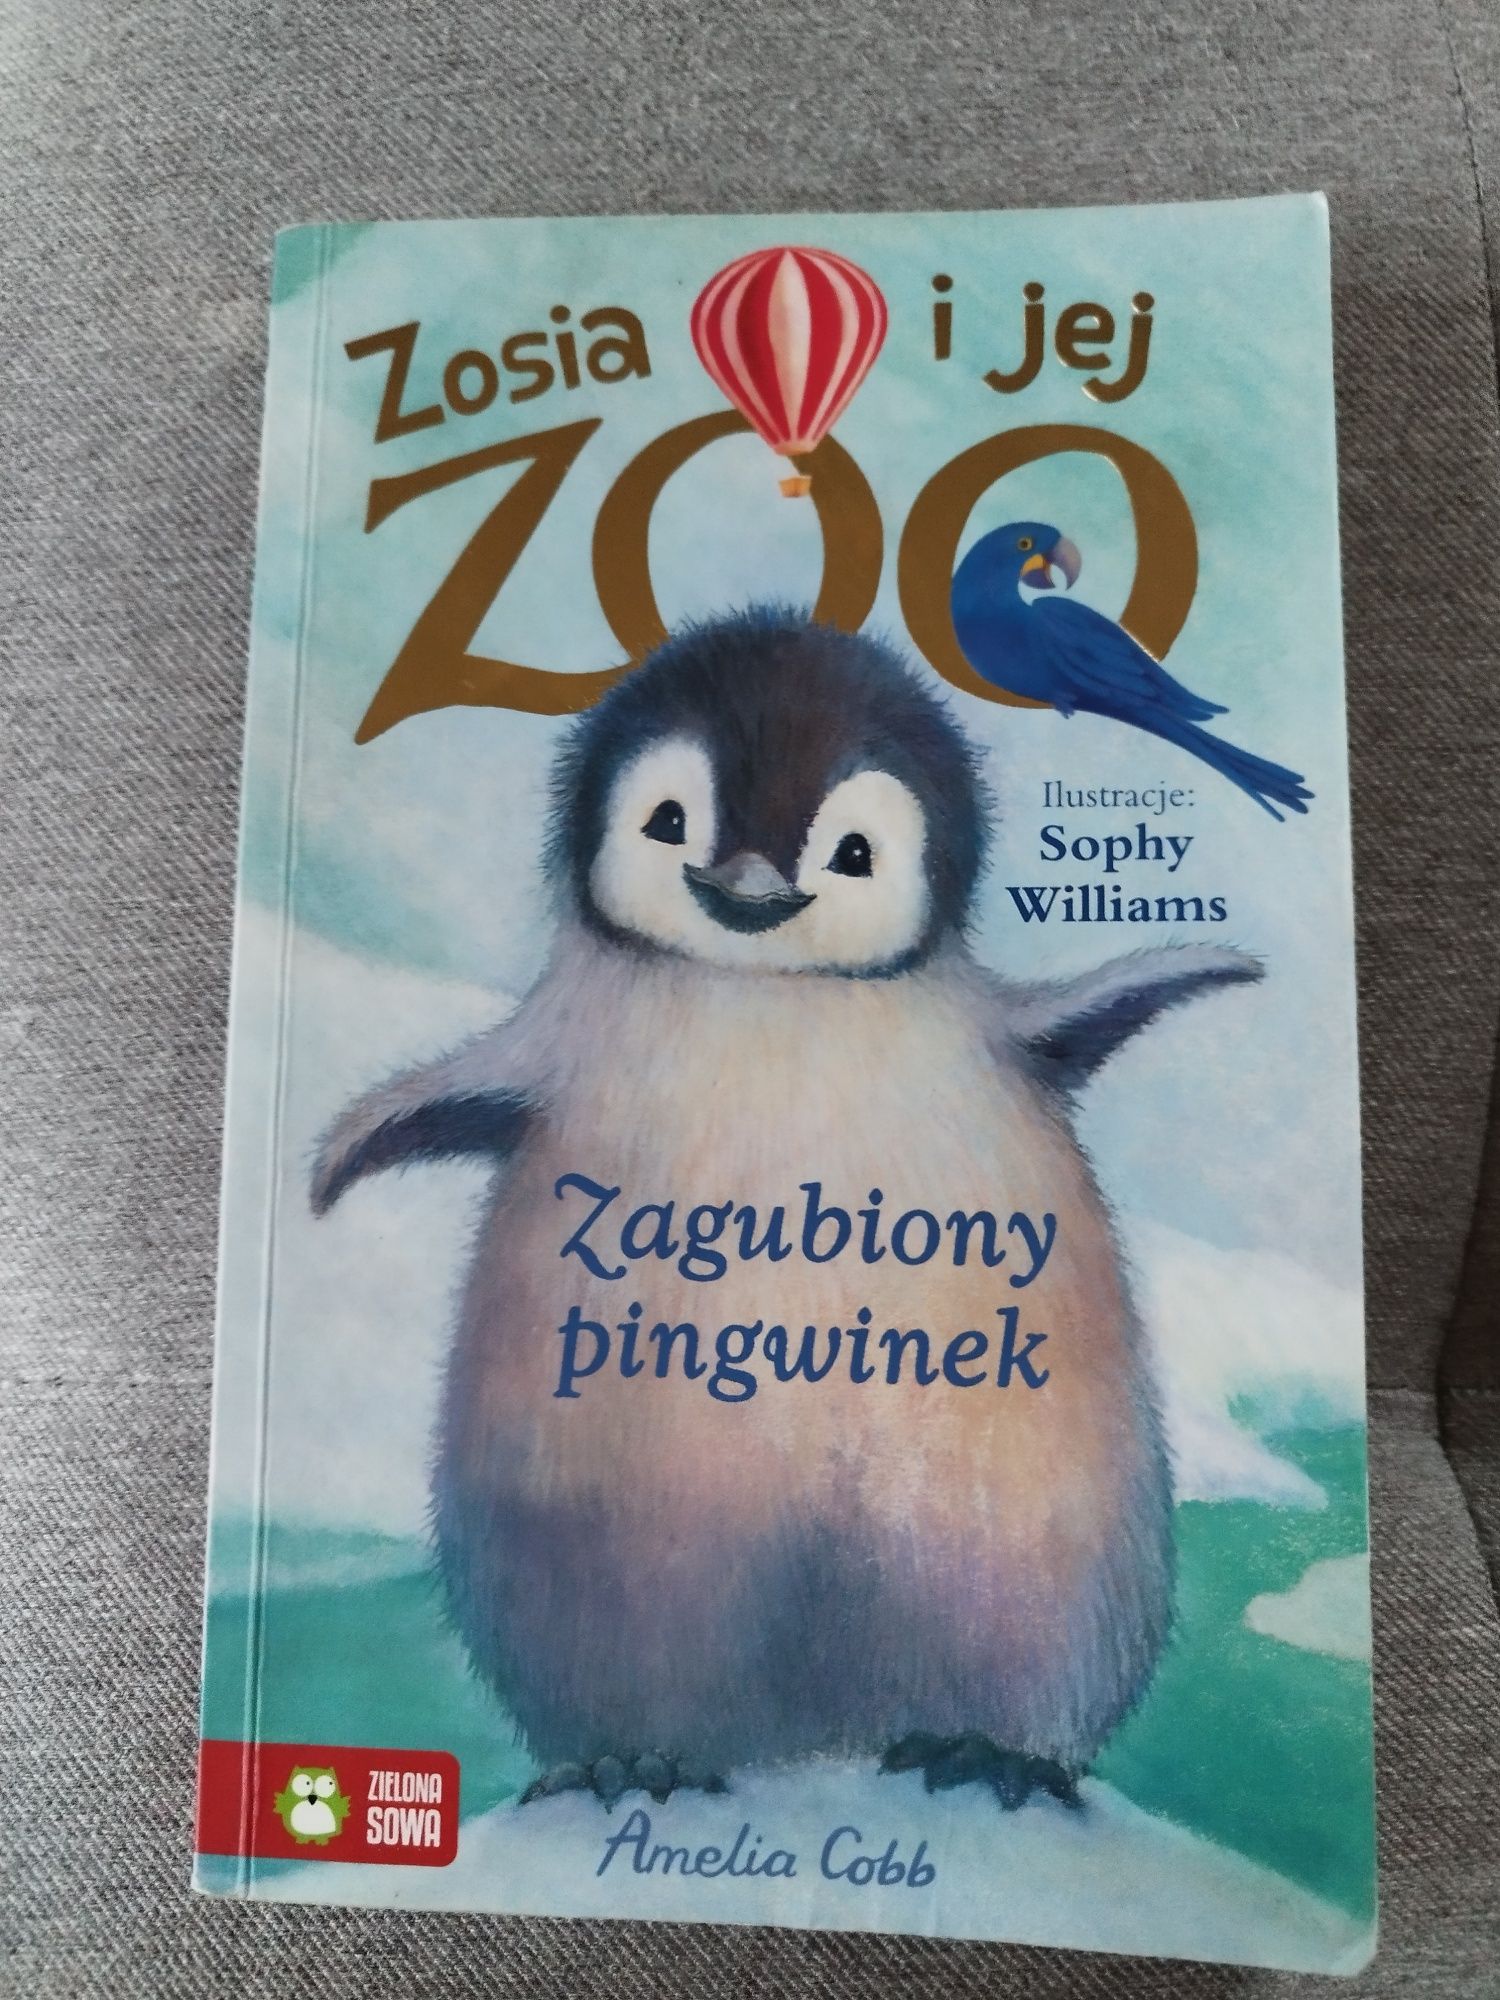 Zosia i jej zoo - "Zagubiony pingwinek"